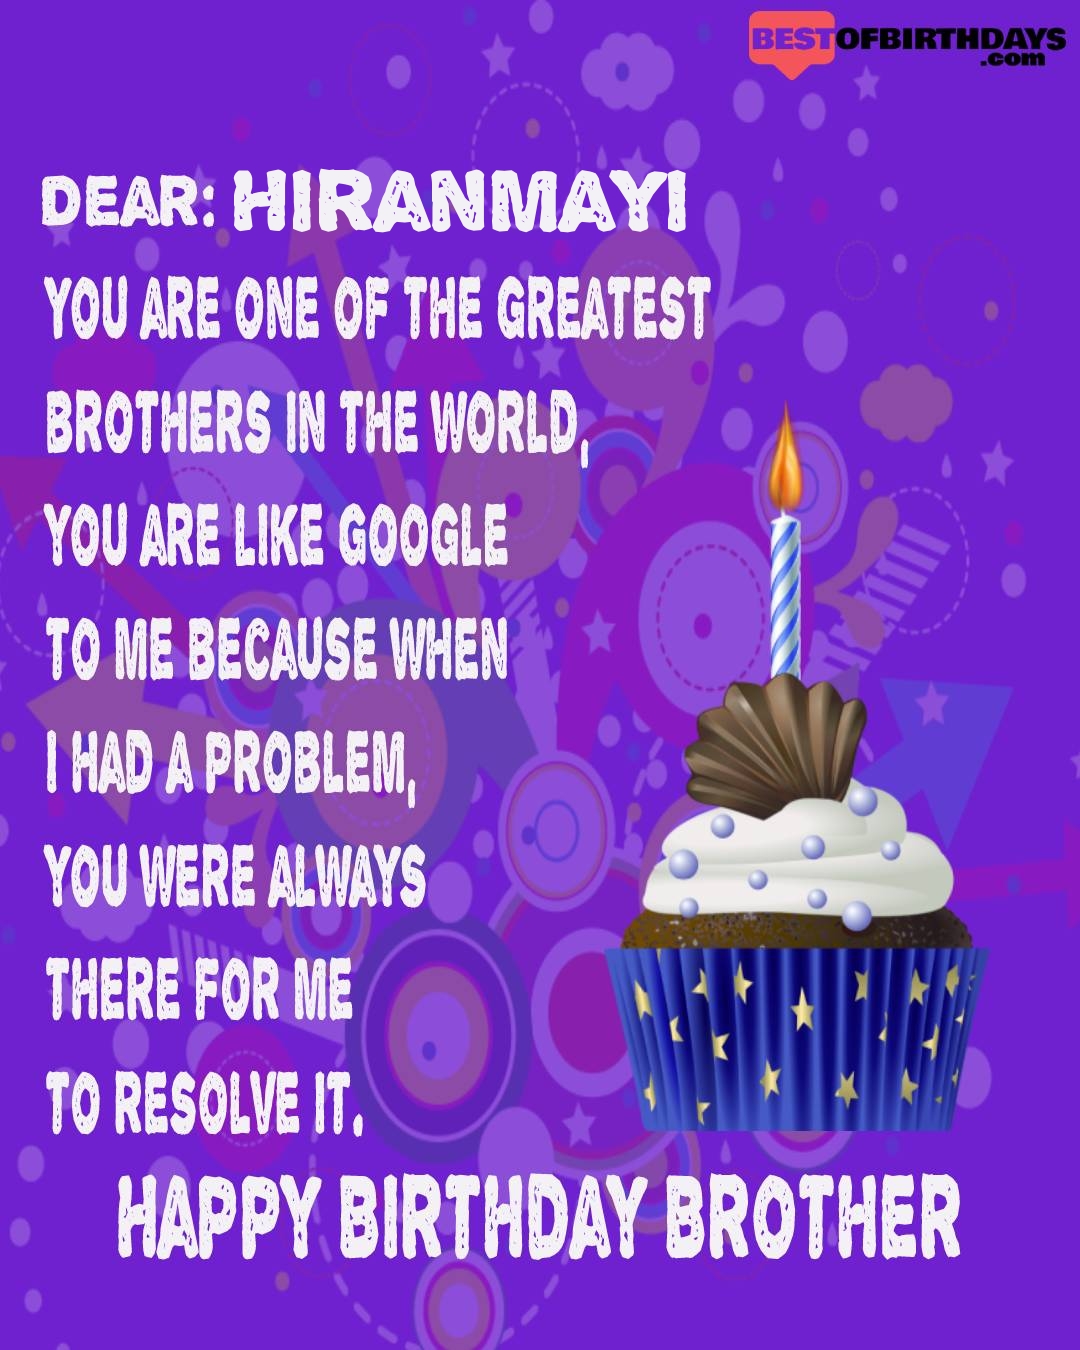 Happy birthday hiranmayi bhai brother bro